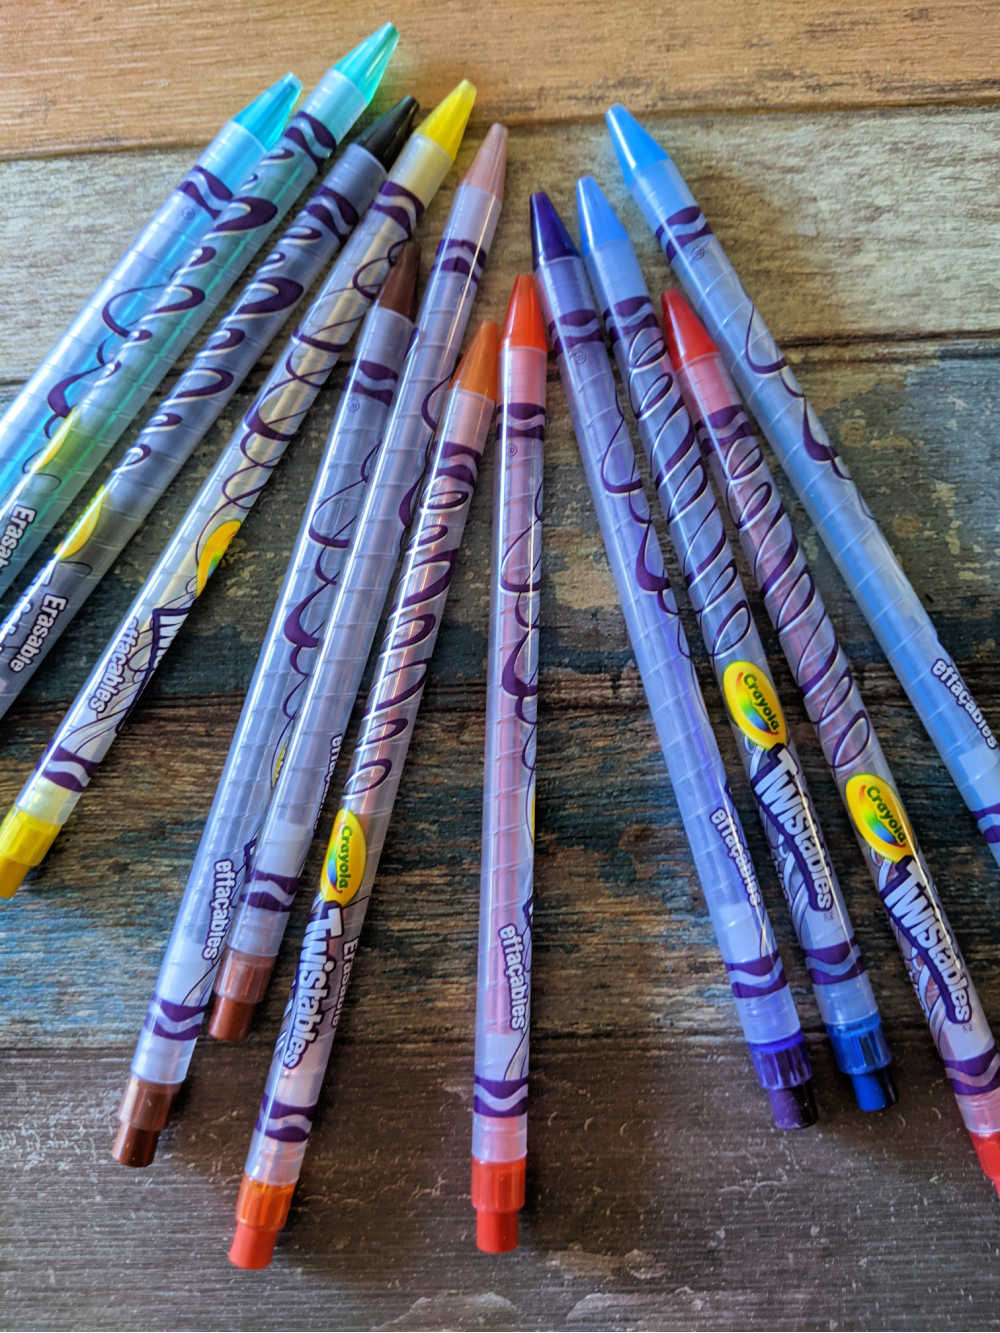 crayola twistables colored pencils